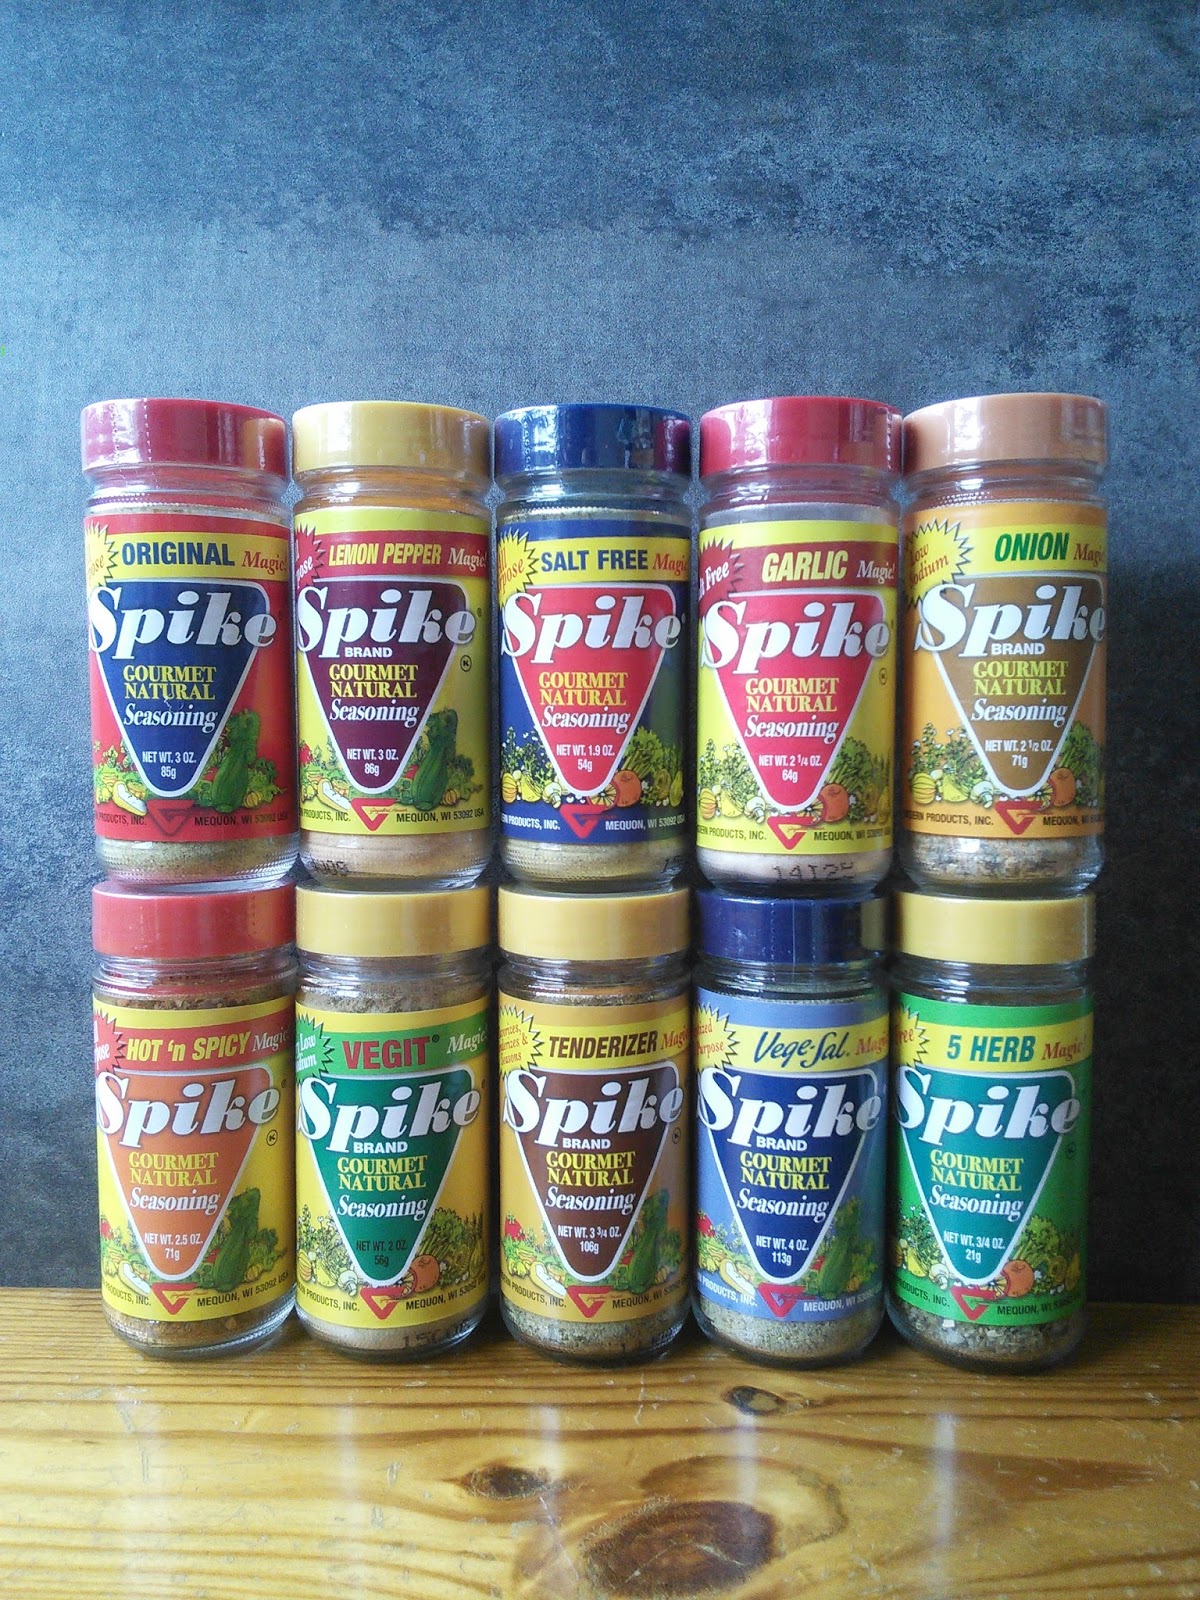 Spike Vegit Magic! Gourmet Natural Seasoning, Salt, Spices & Seasonings